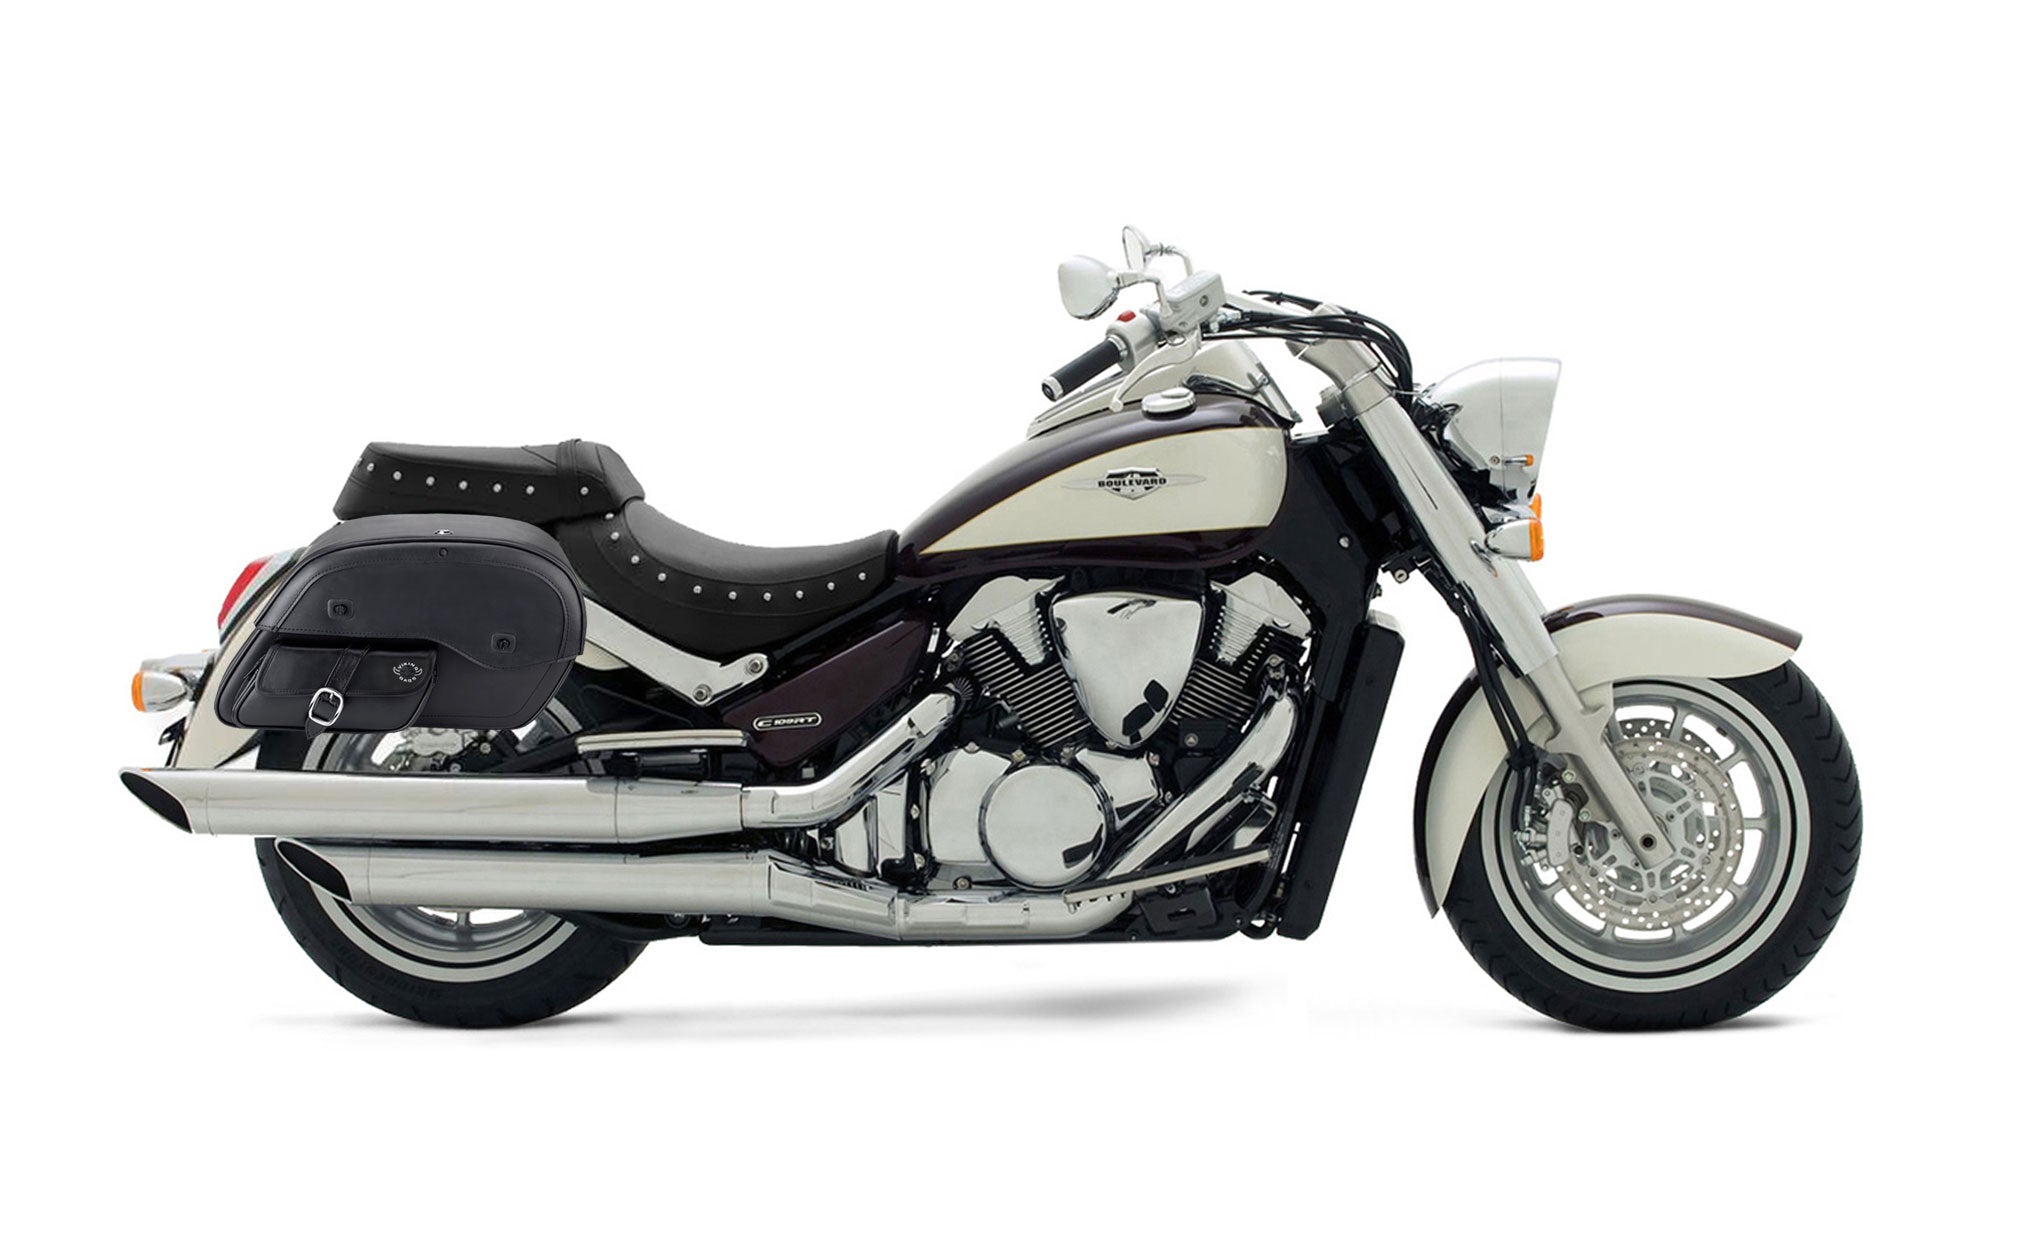 Viking Essential Side Pocket Large Suzuki Boulevard C109 Leather Motorcycle Saddlebags on Bike Photo @expand